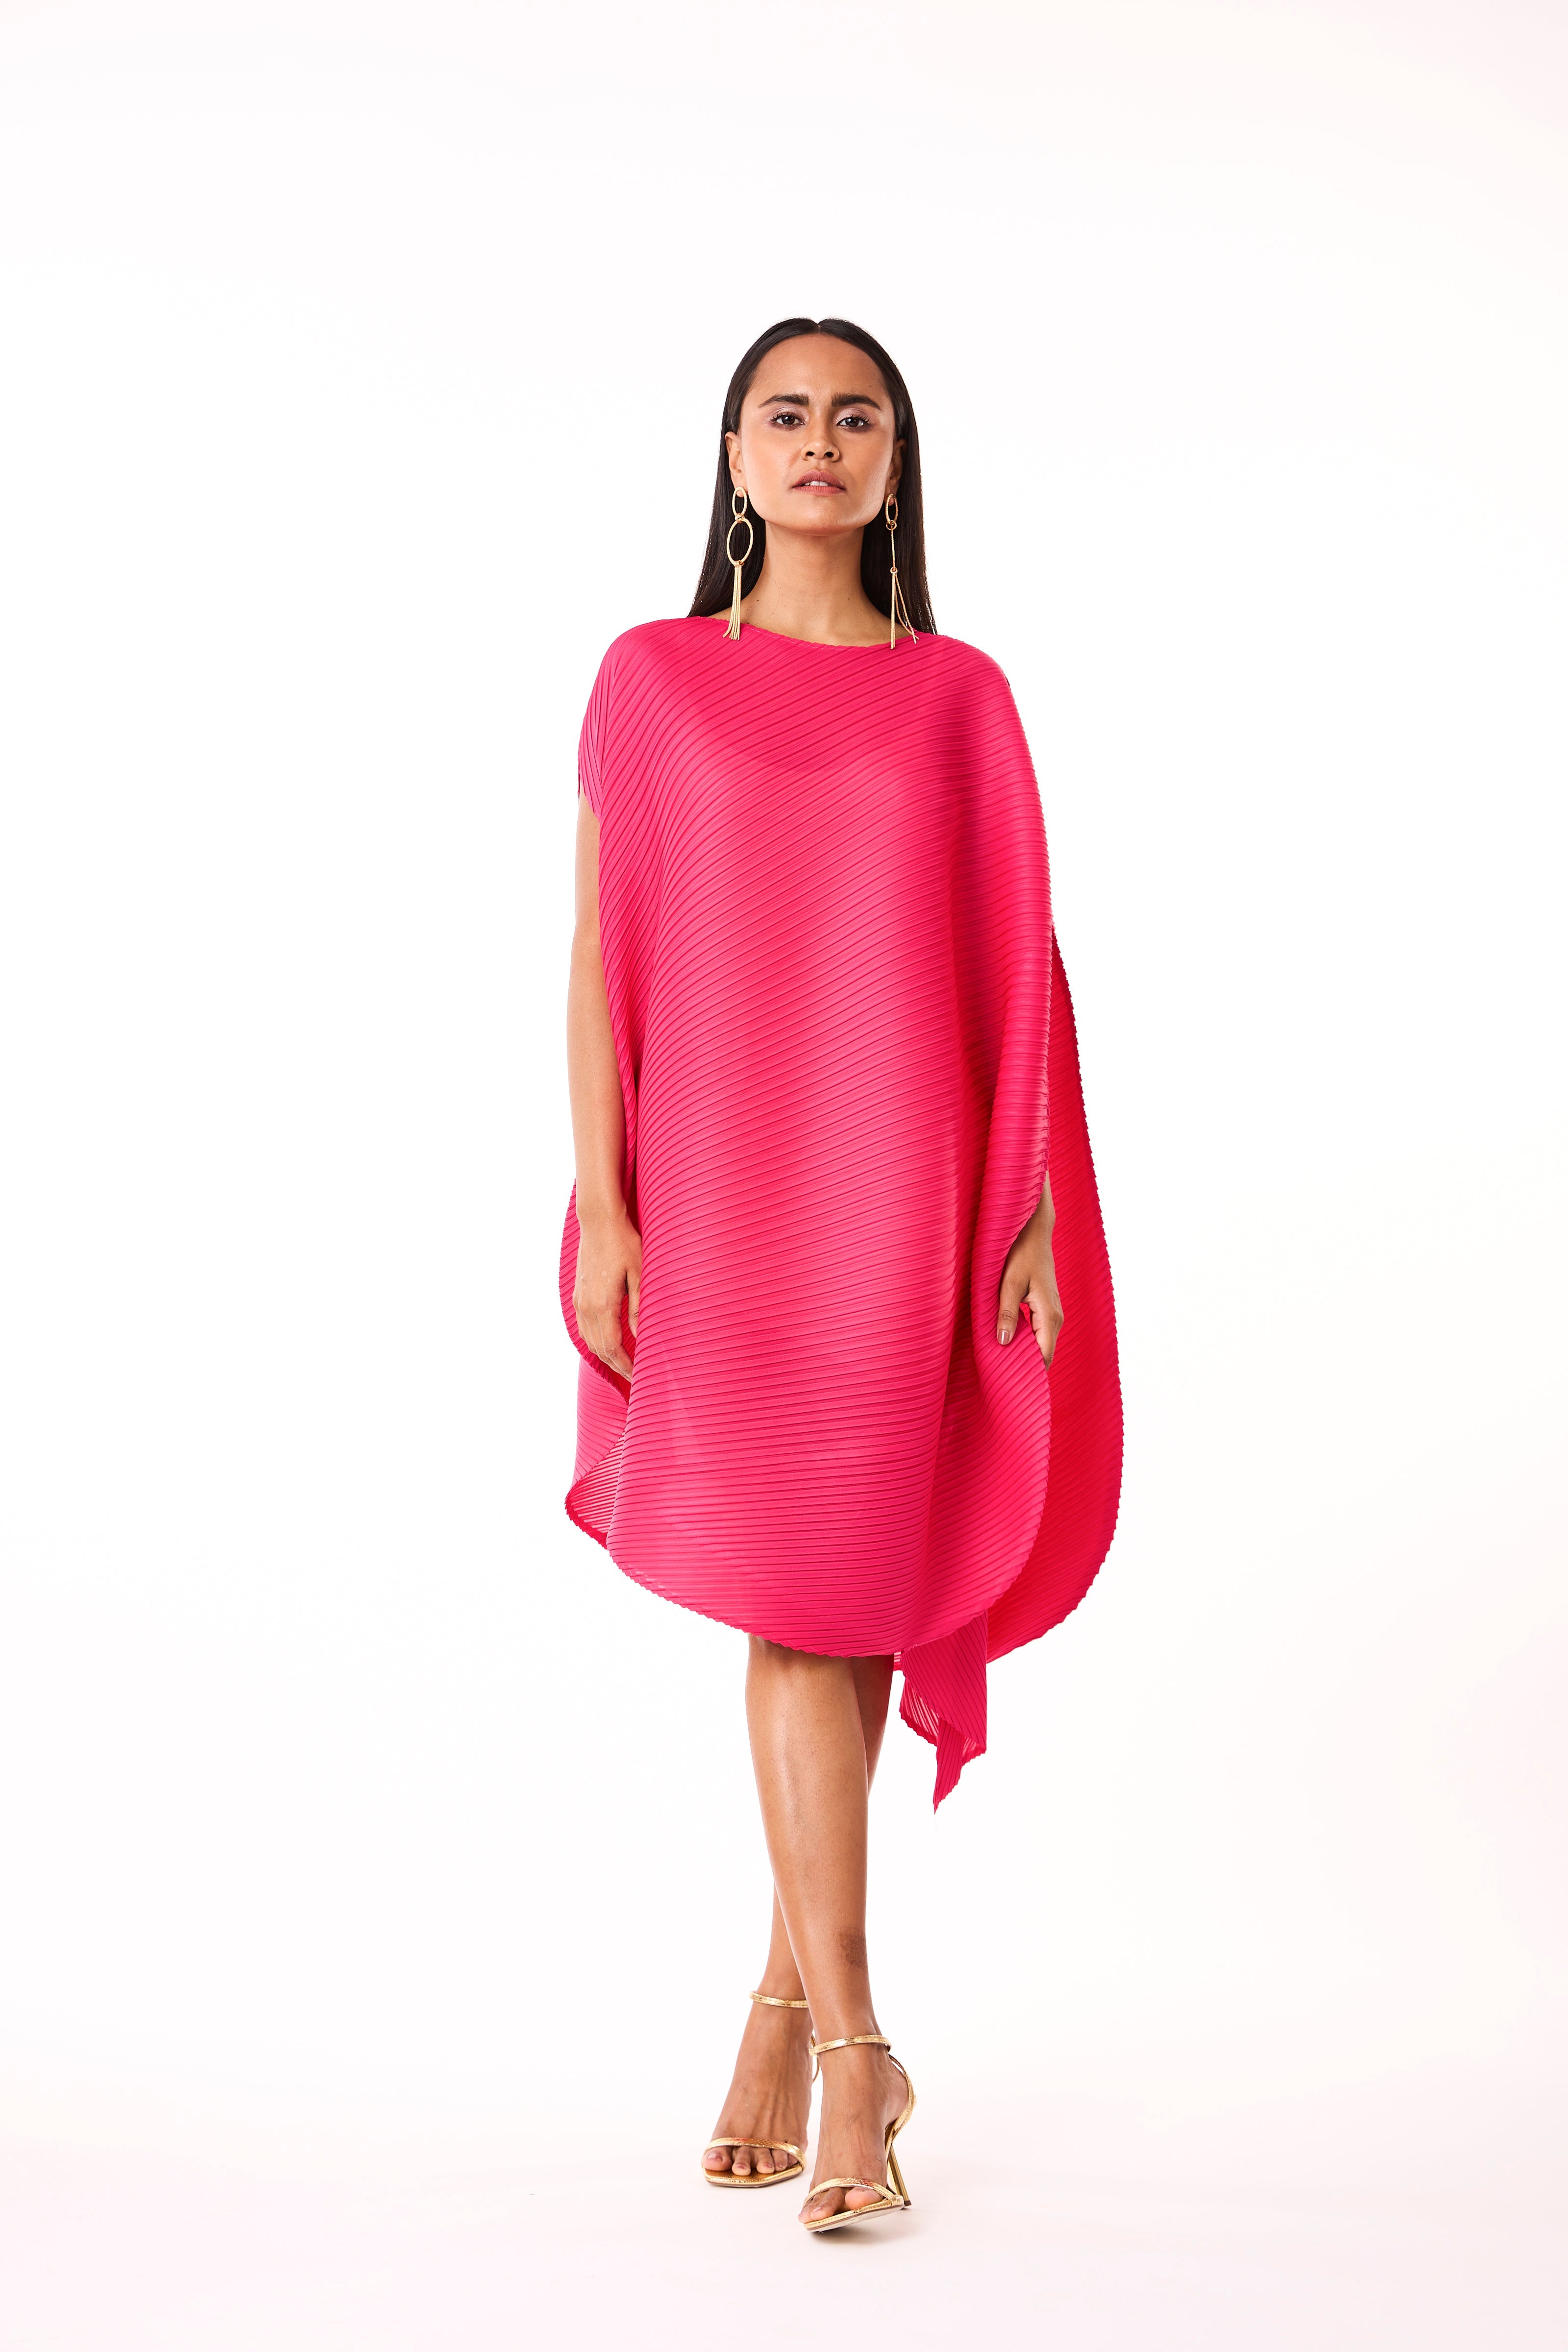 Lanna Dress - Hot Pink